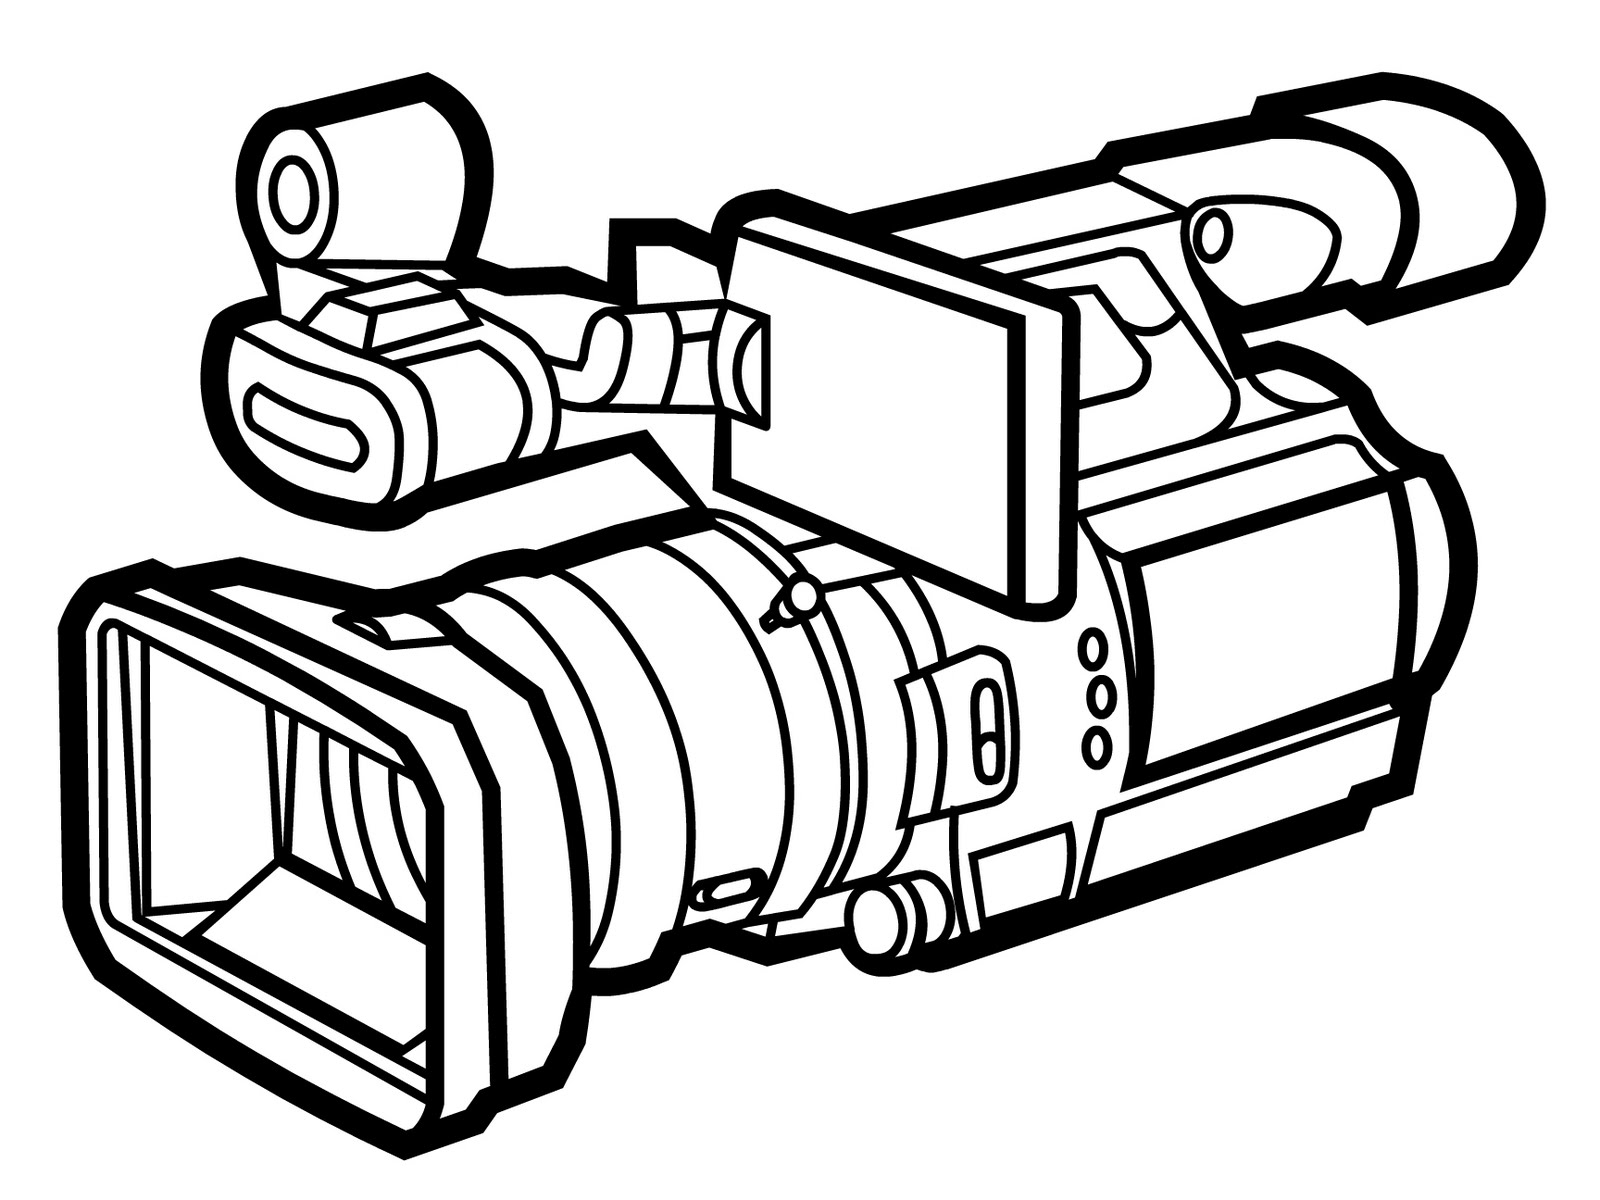 Clip art video camera clipartfox